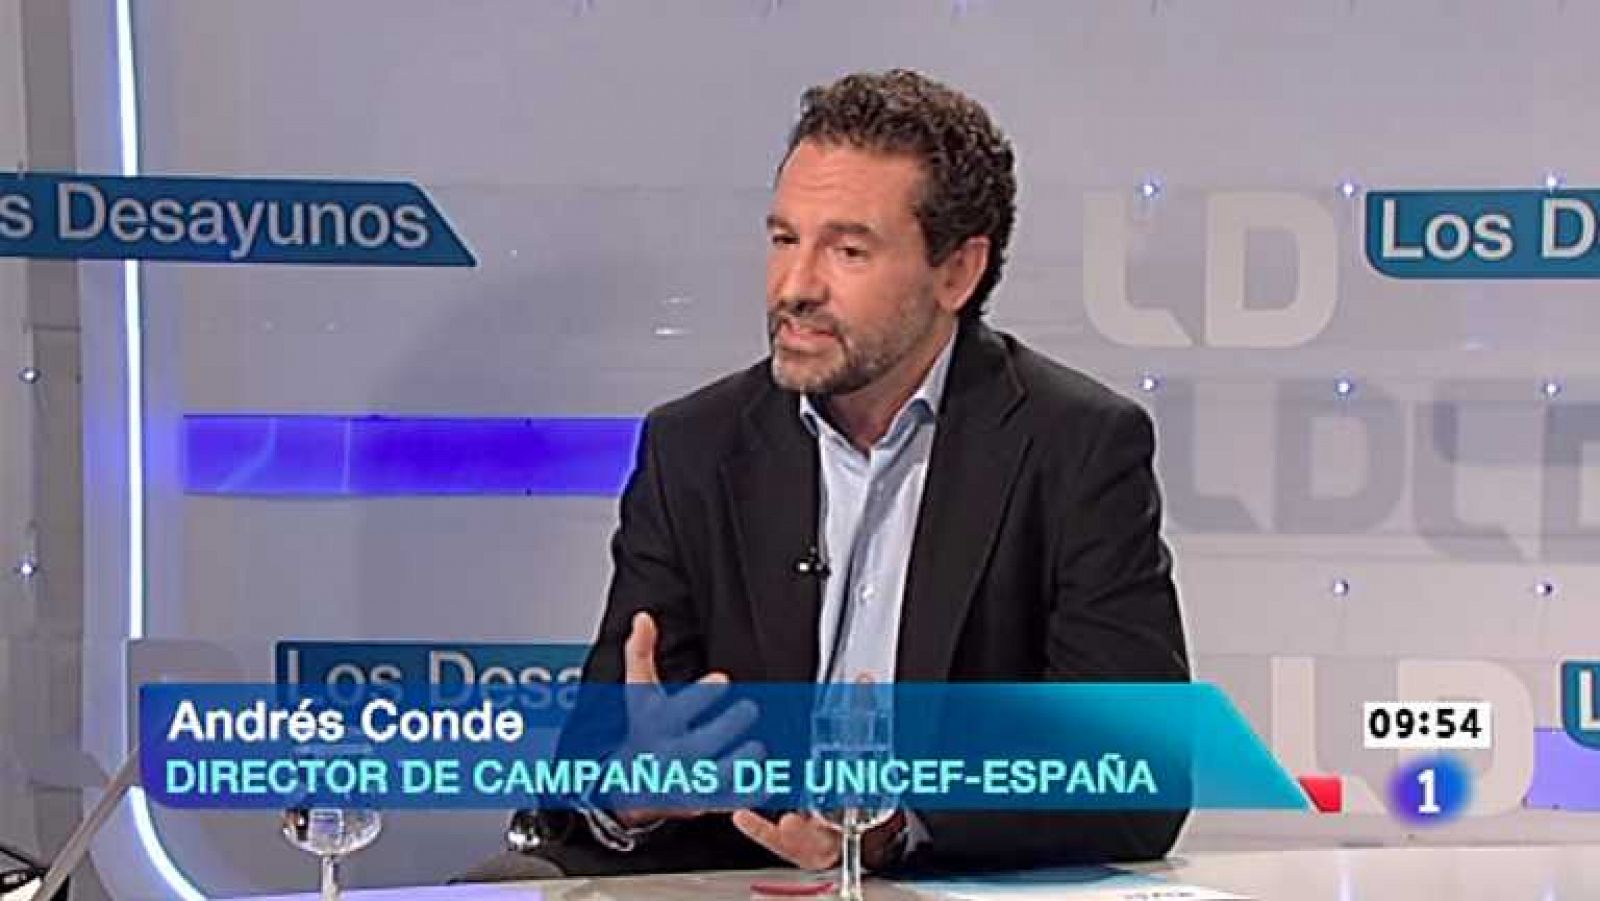 Los desayunos de TVE - Andrés Conde, director de campañas de Unicef España